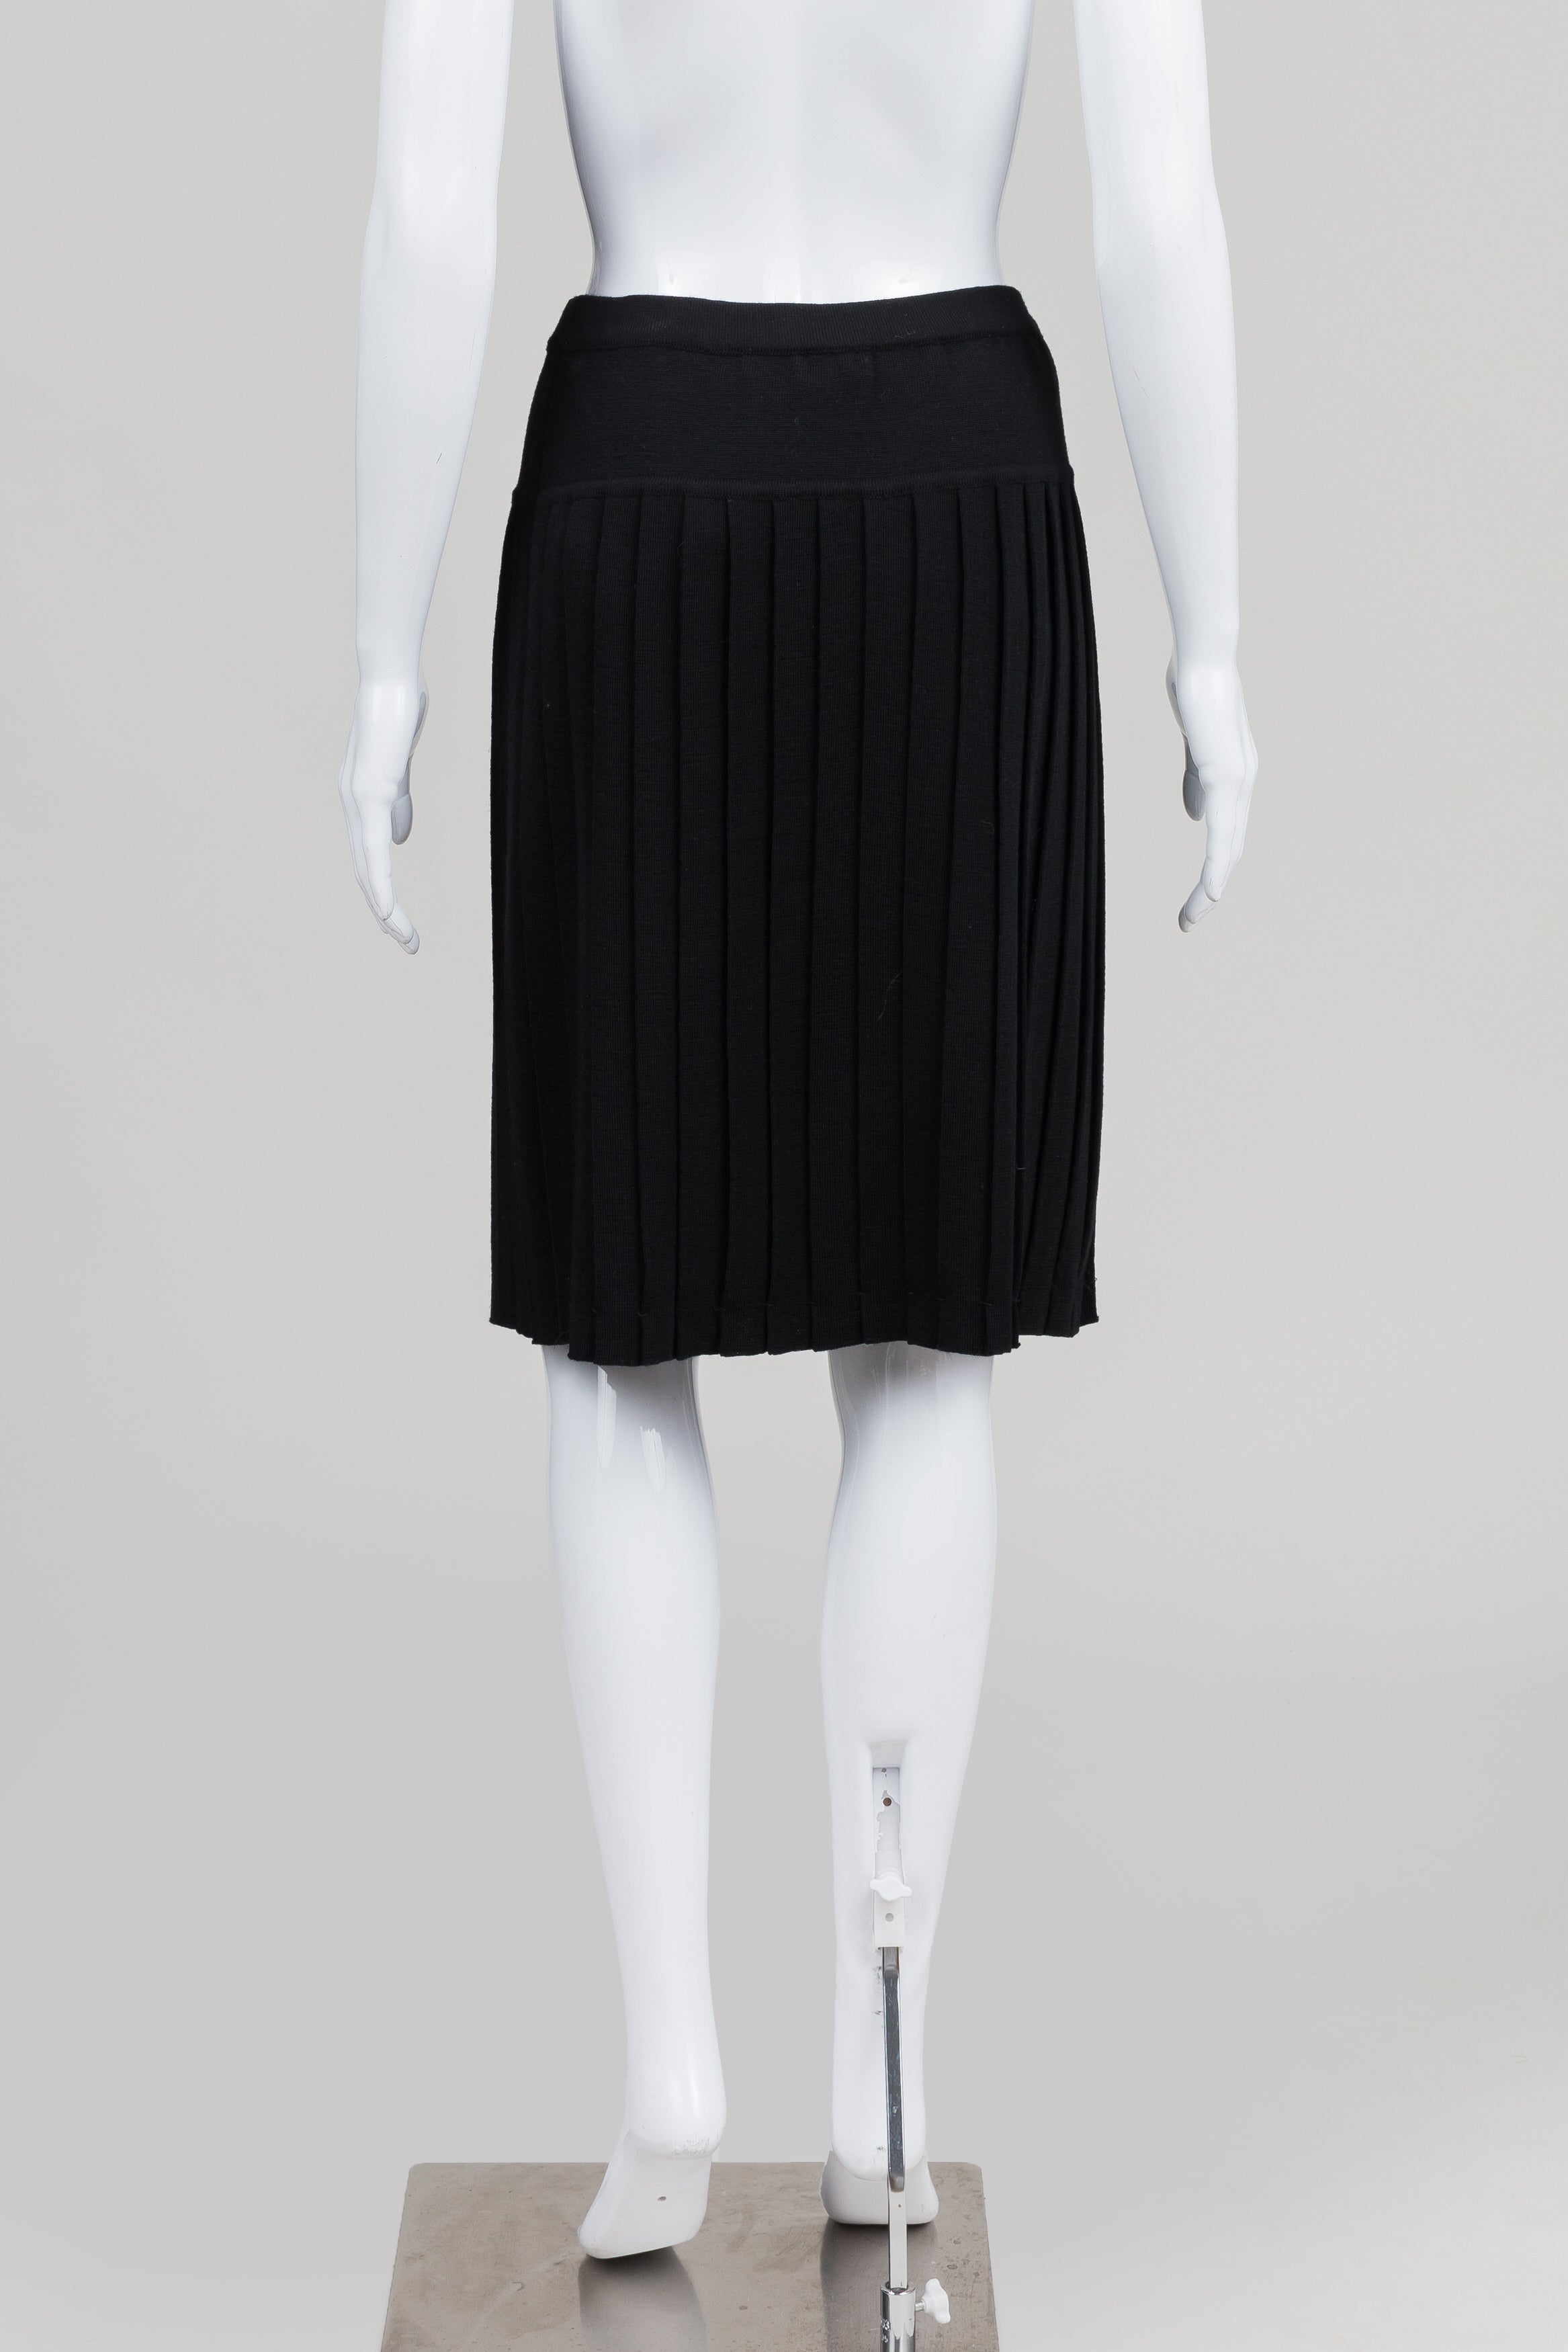 Dana Buchman black knit pleated skirt (M) *New w/ tags